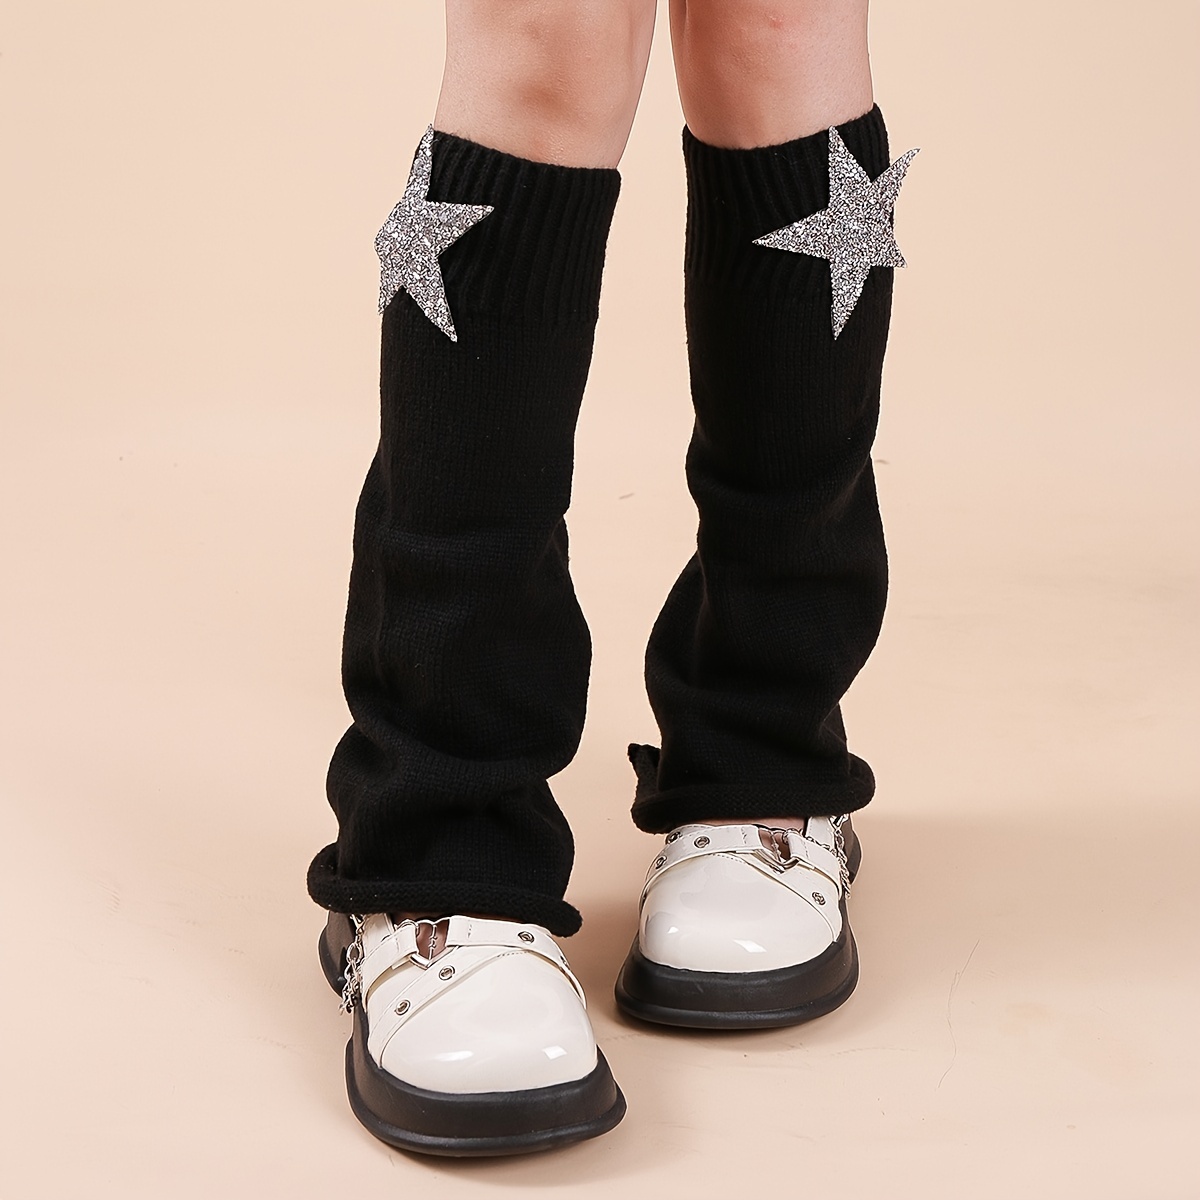 Star Pattern Fashionable Knit Flare Leg Warmers, Women's Stockings & Hosiery